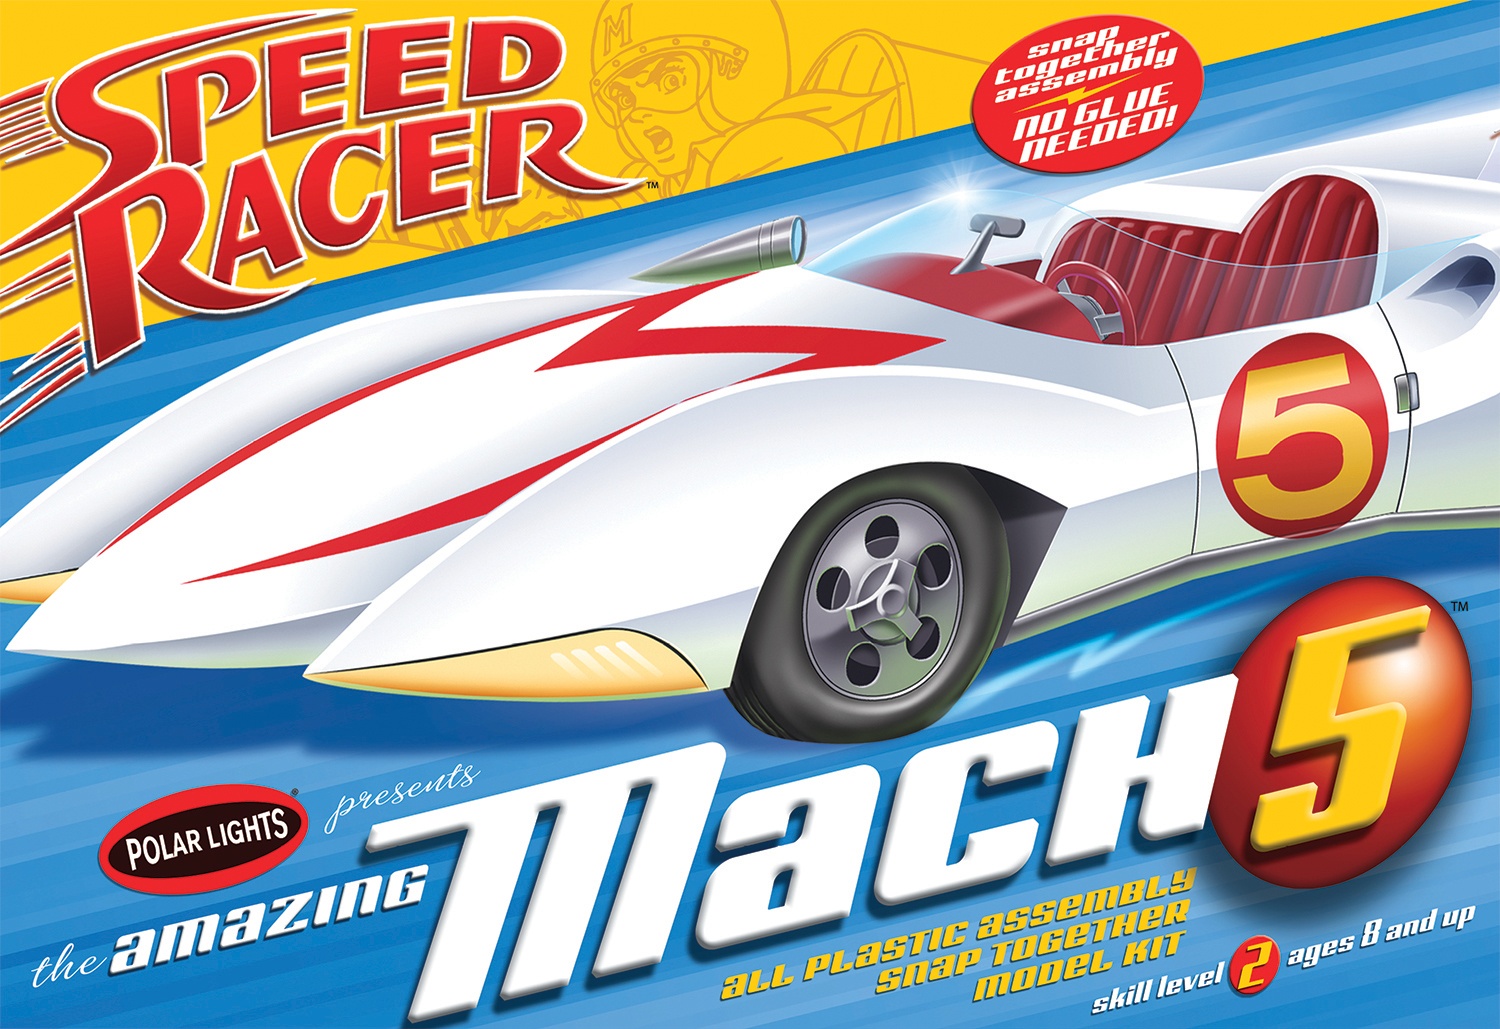 SPEED RACER MACH 5